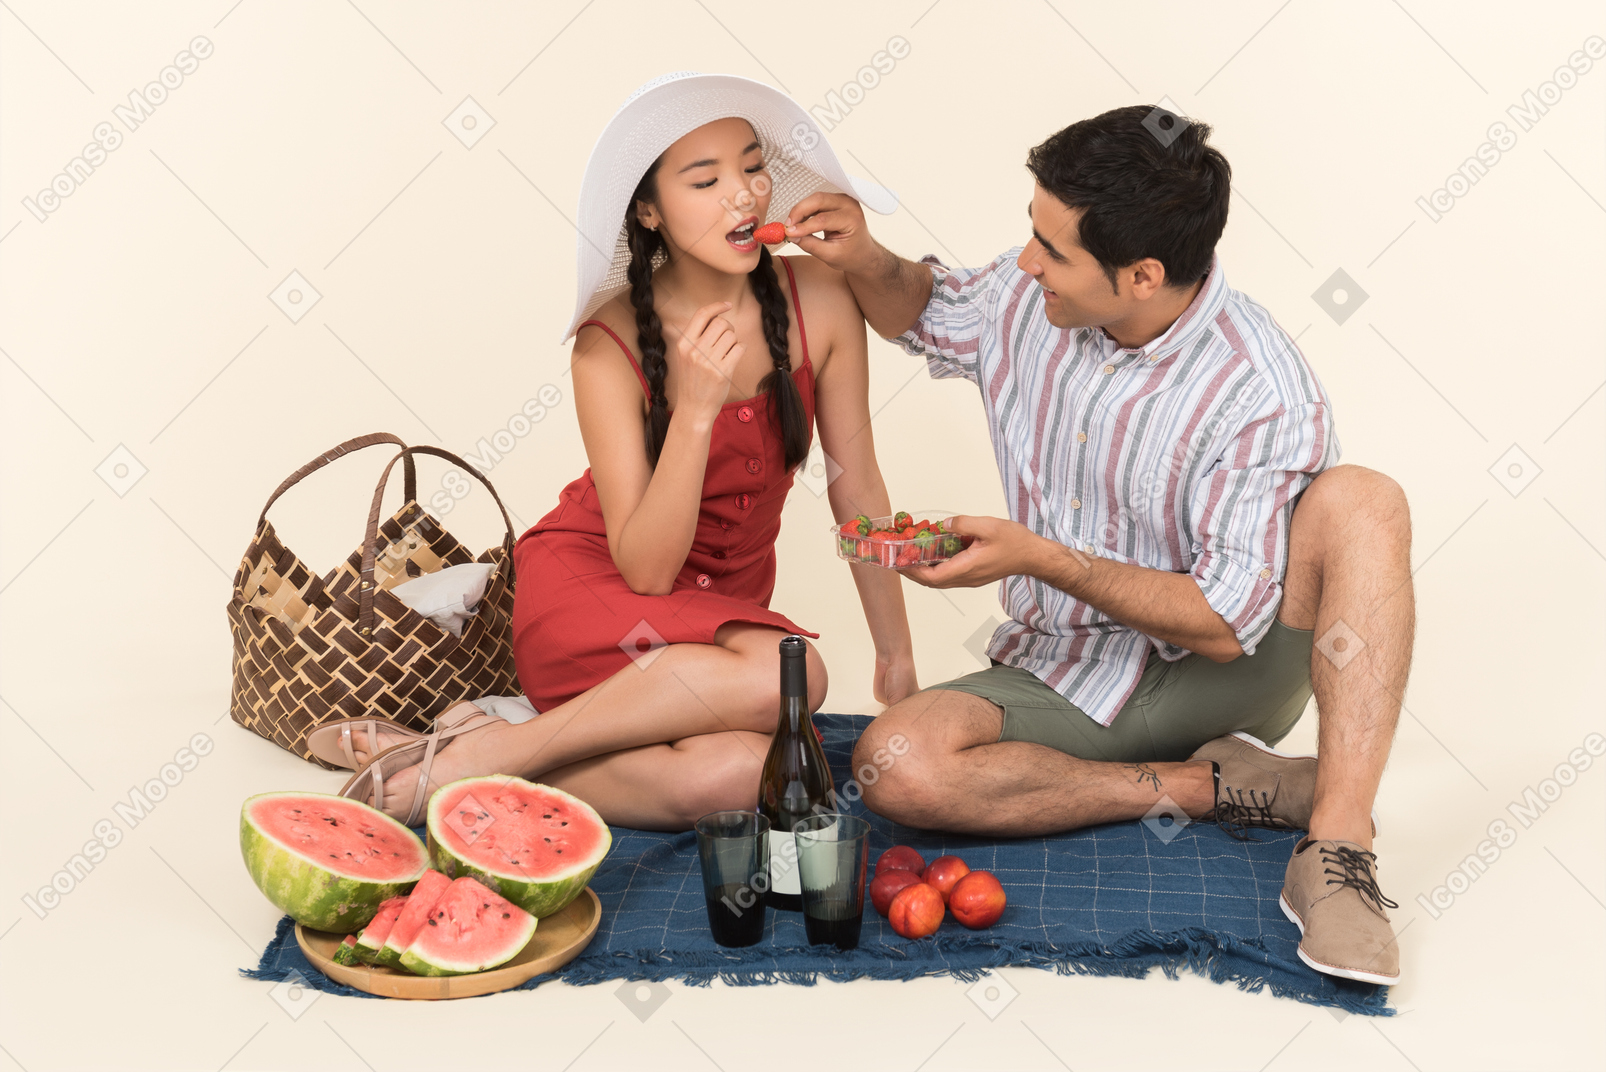 ピクニックと女の子にイチゴを与える男を持っている異人種間のカップル